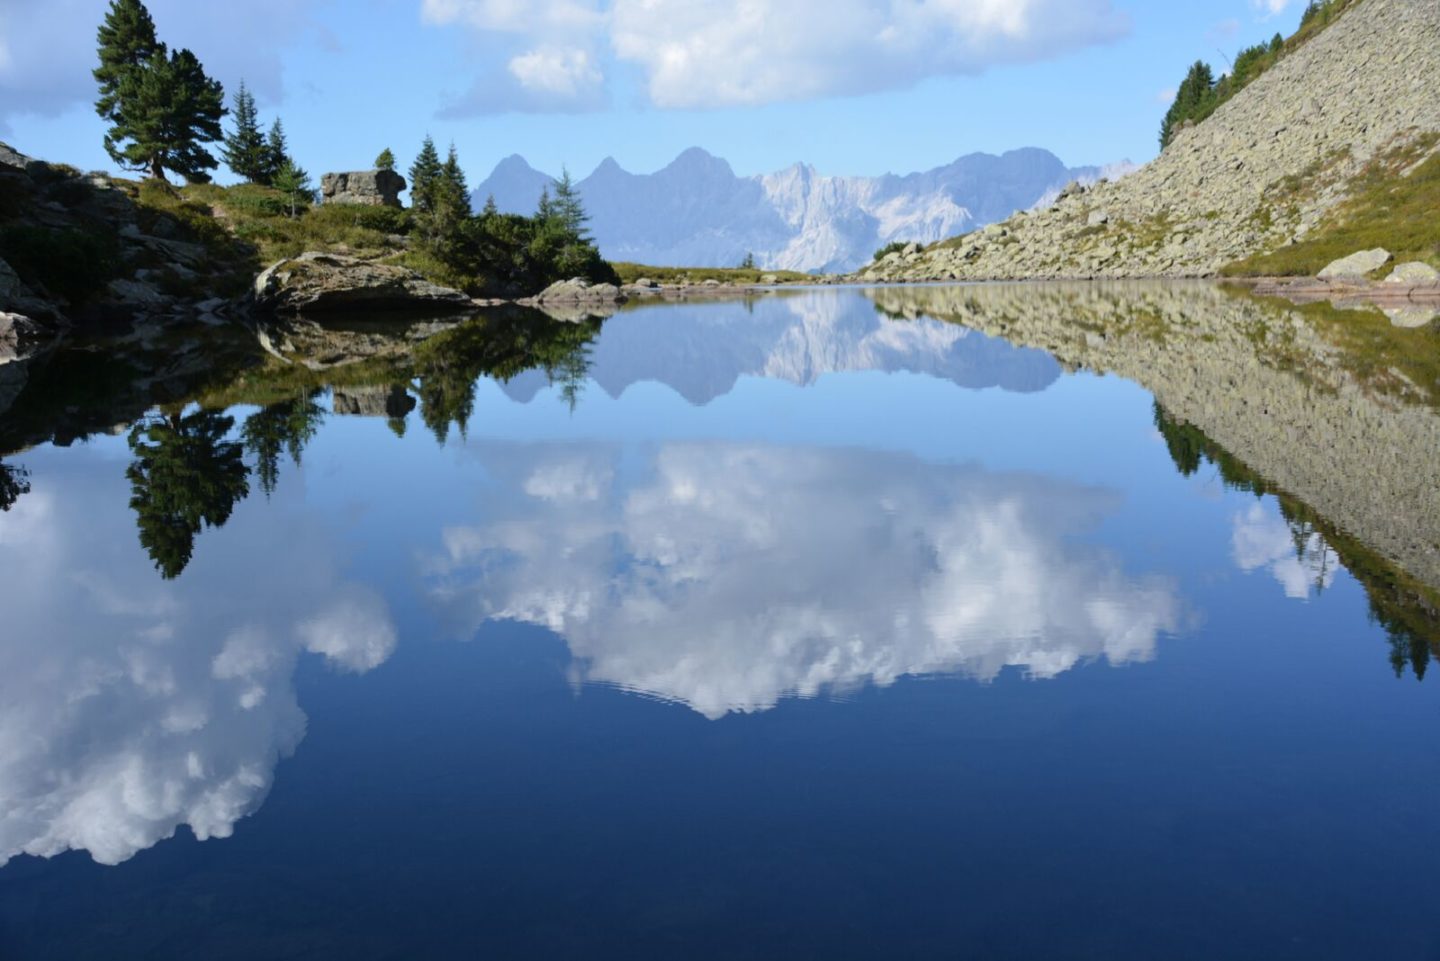 dachstein-spiegelsee-austria-hiking-wanderlust8